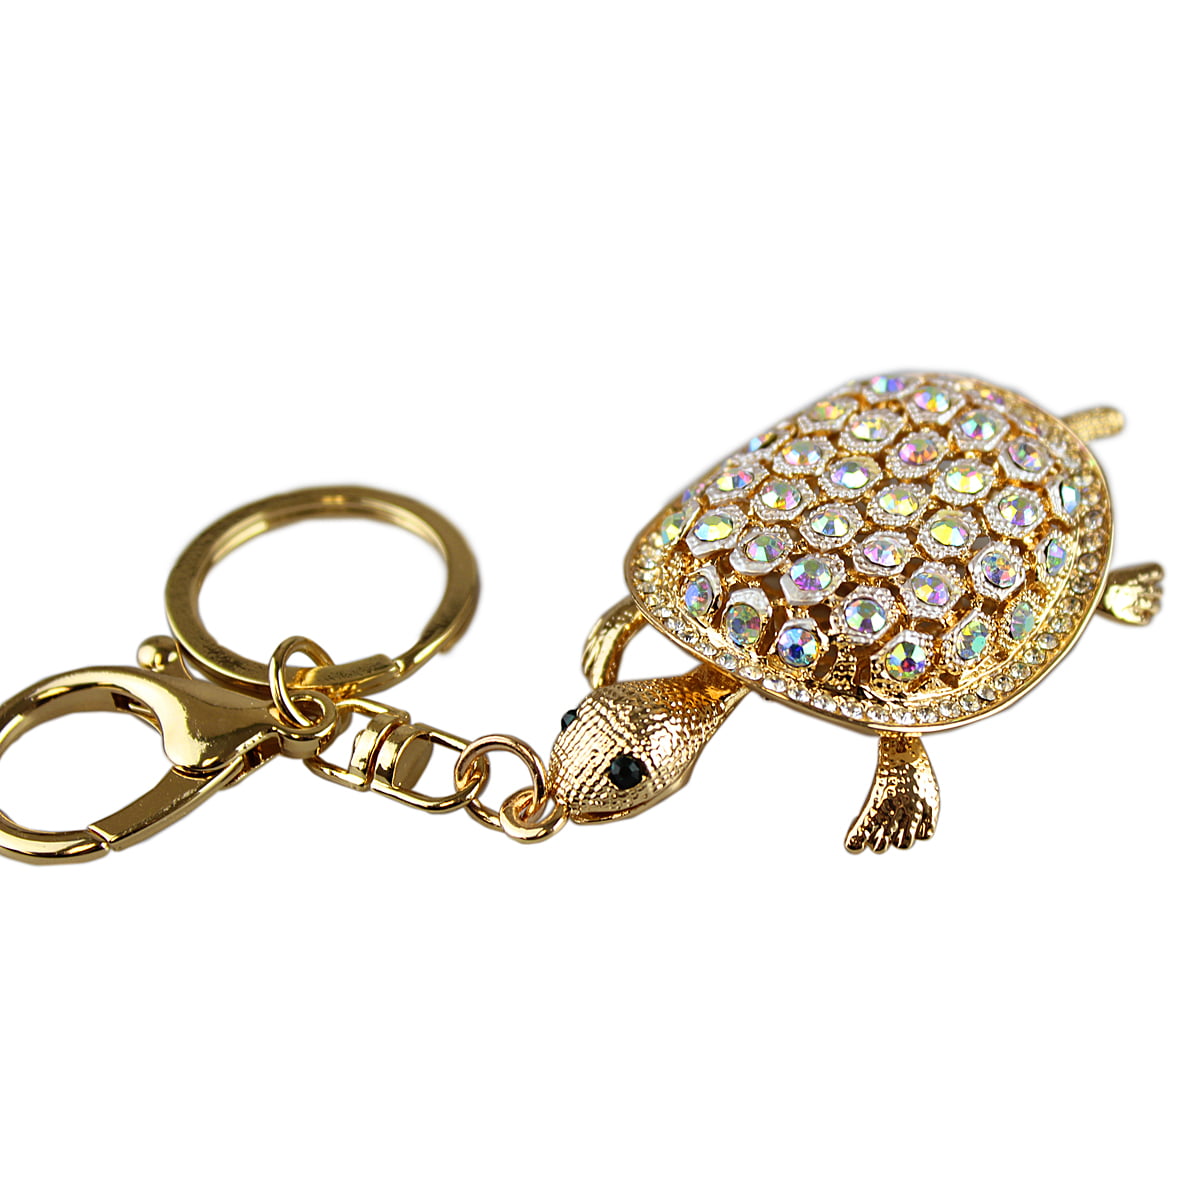 Alloy Sea Turtle Pendant Key Chain Bag Clip